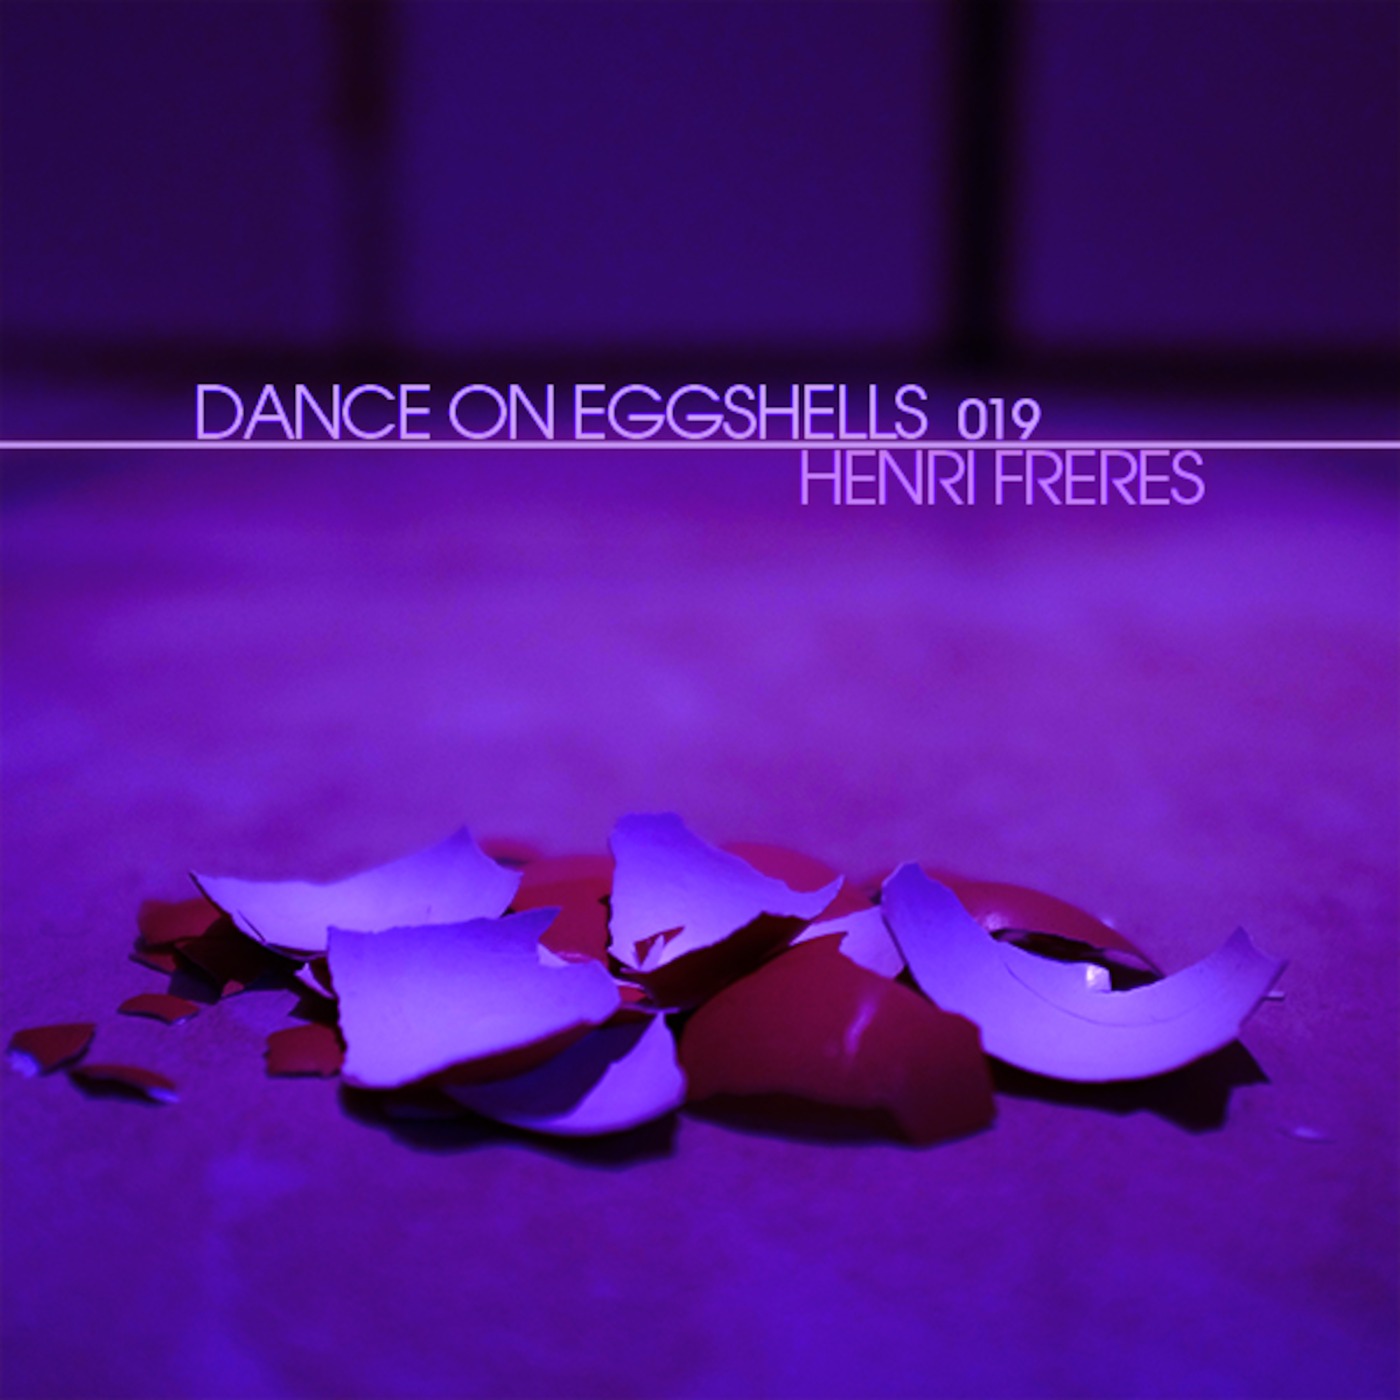 Dance On Eggshells 019 - Henri Freres